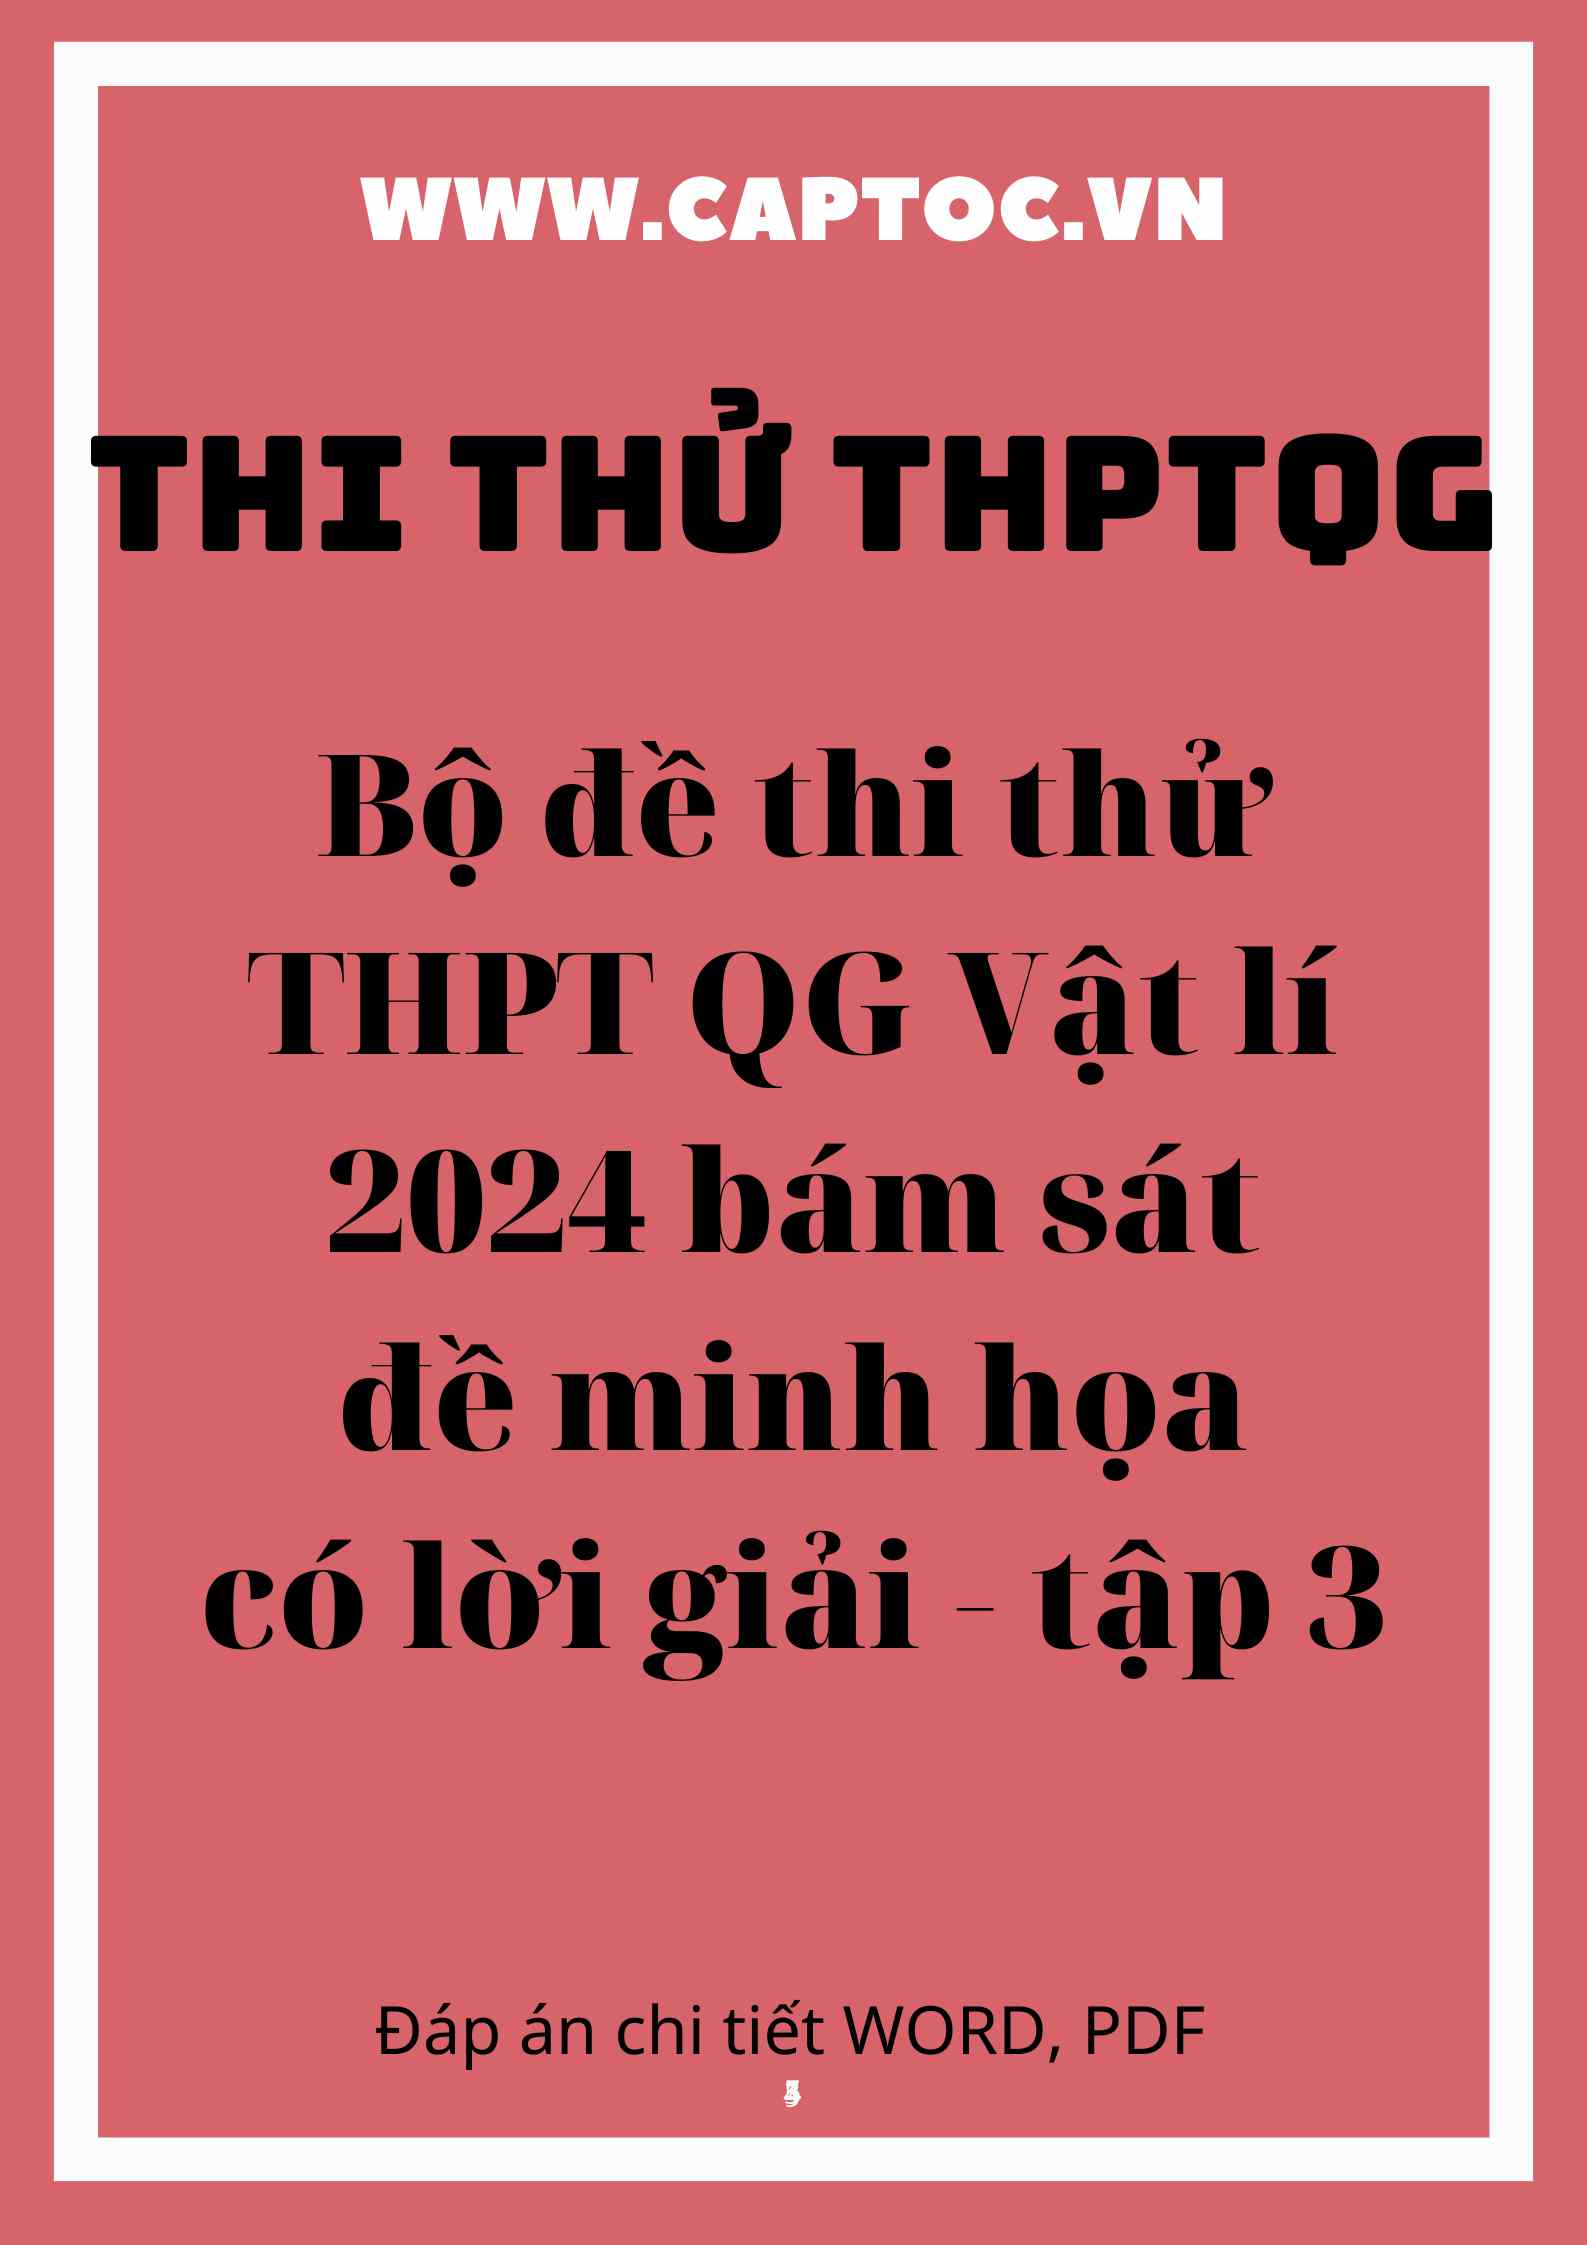 Bộ đề thi thử THPT QG Vật lí 2024 bám sát đề minh họa có lời giải - tập 3